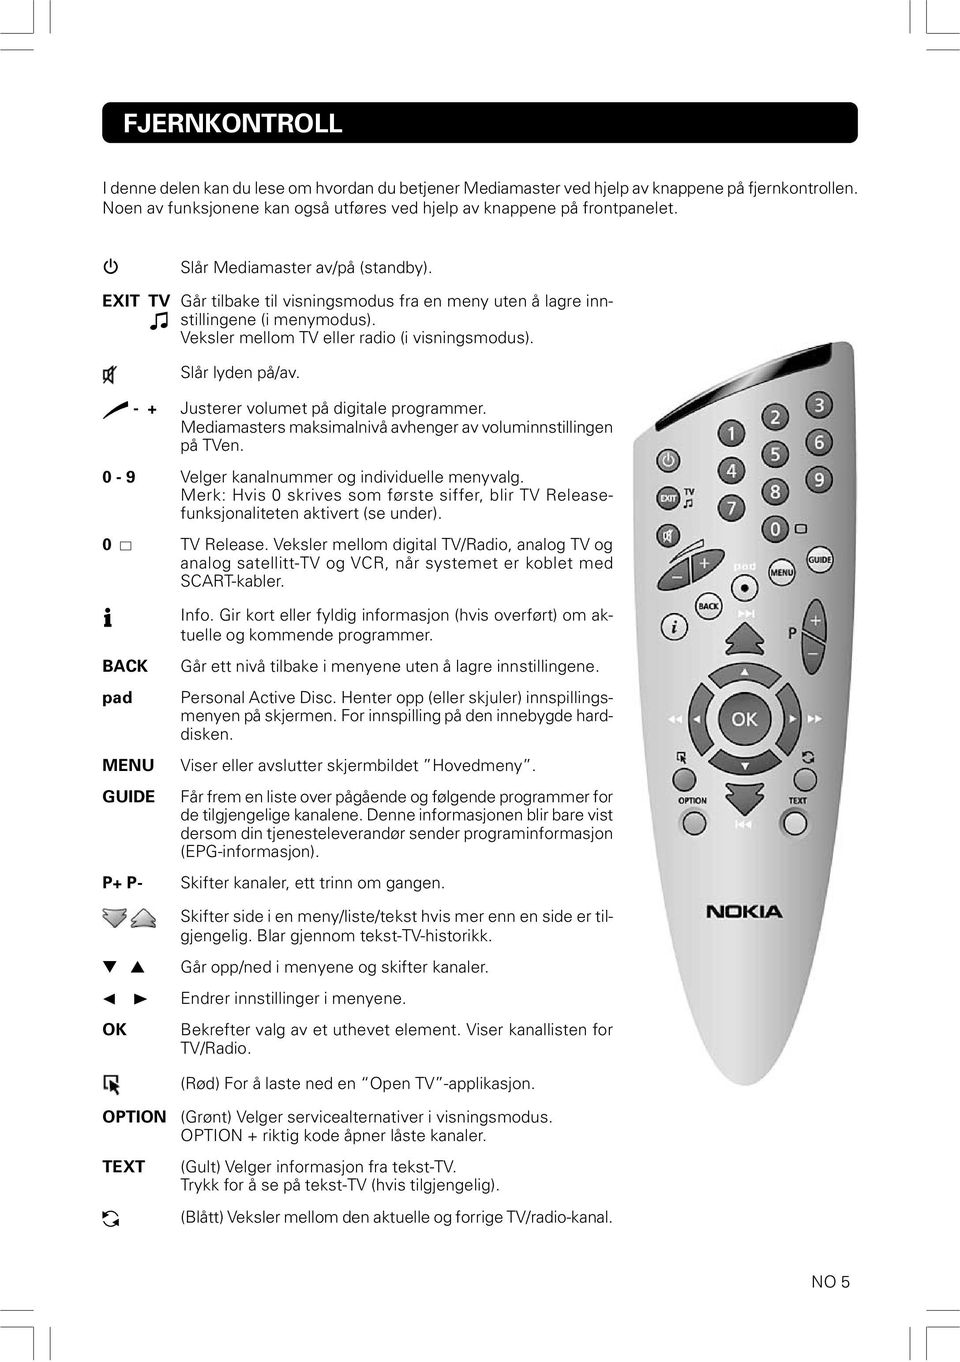 - + Justerer volumet på digitale programmer. Mediamasters maksimalnivå avhenger av voluminnstillingen på TVen. 0-9 Velger kanalnummer og individuelle menyvalg.